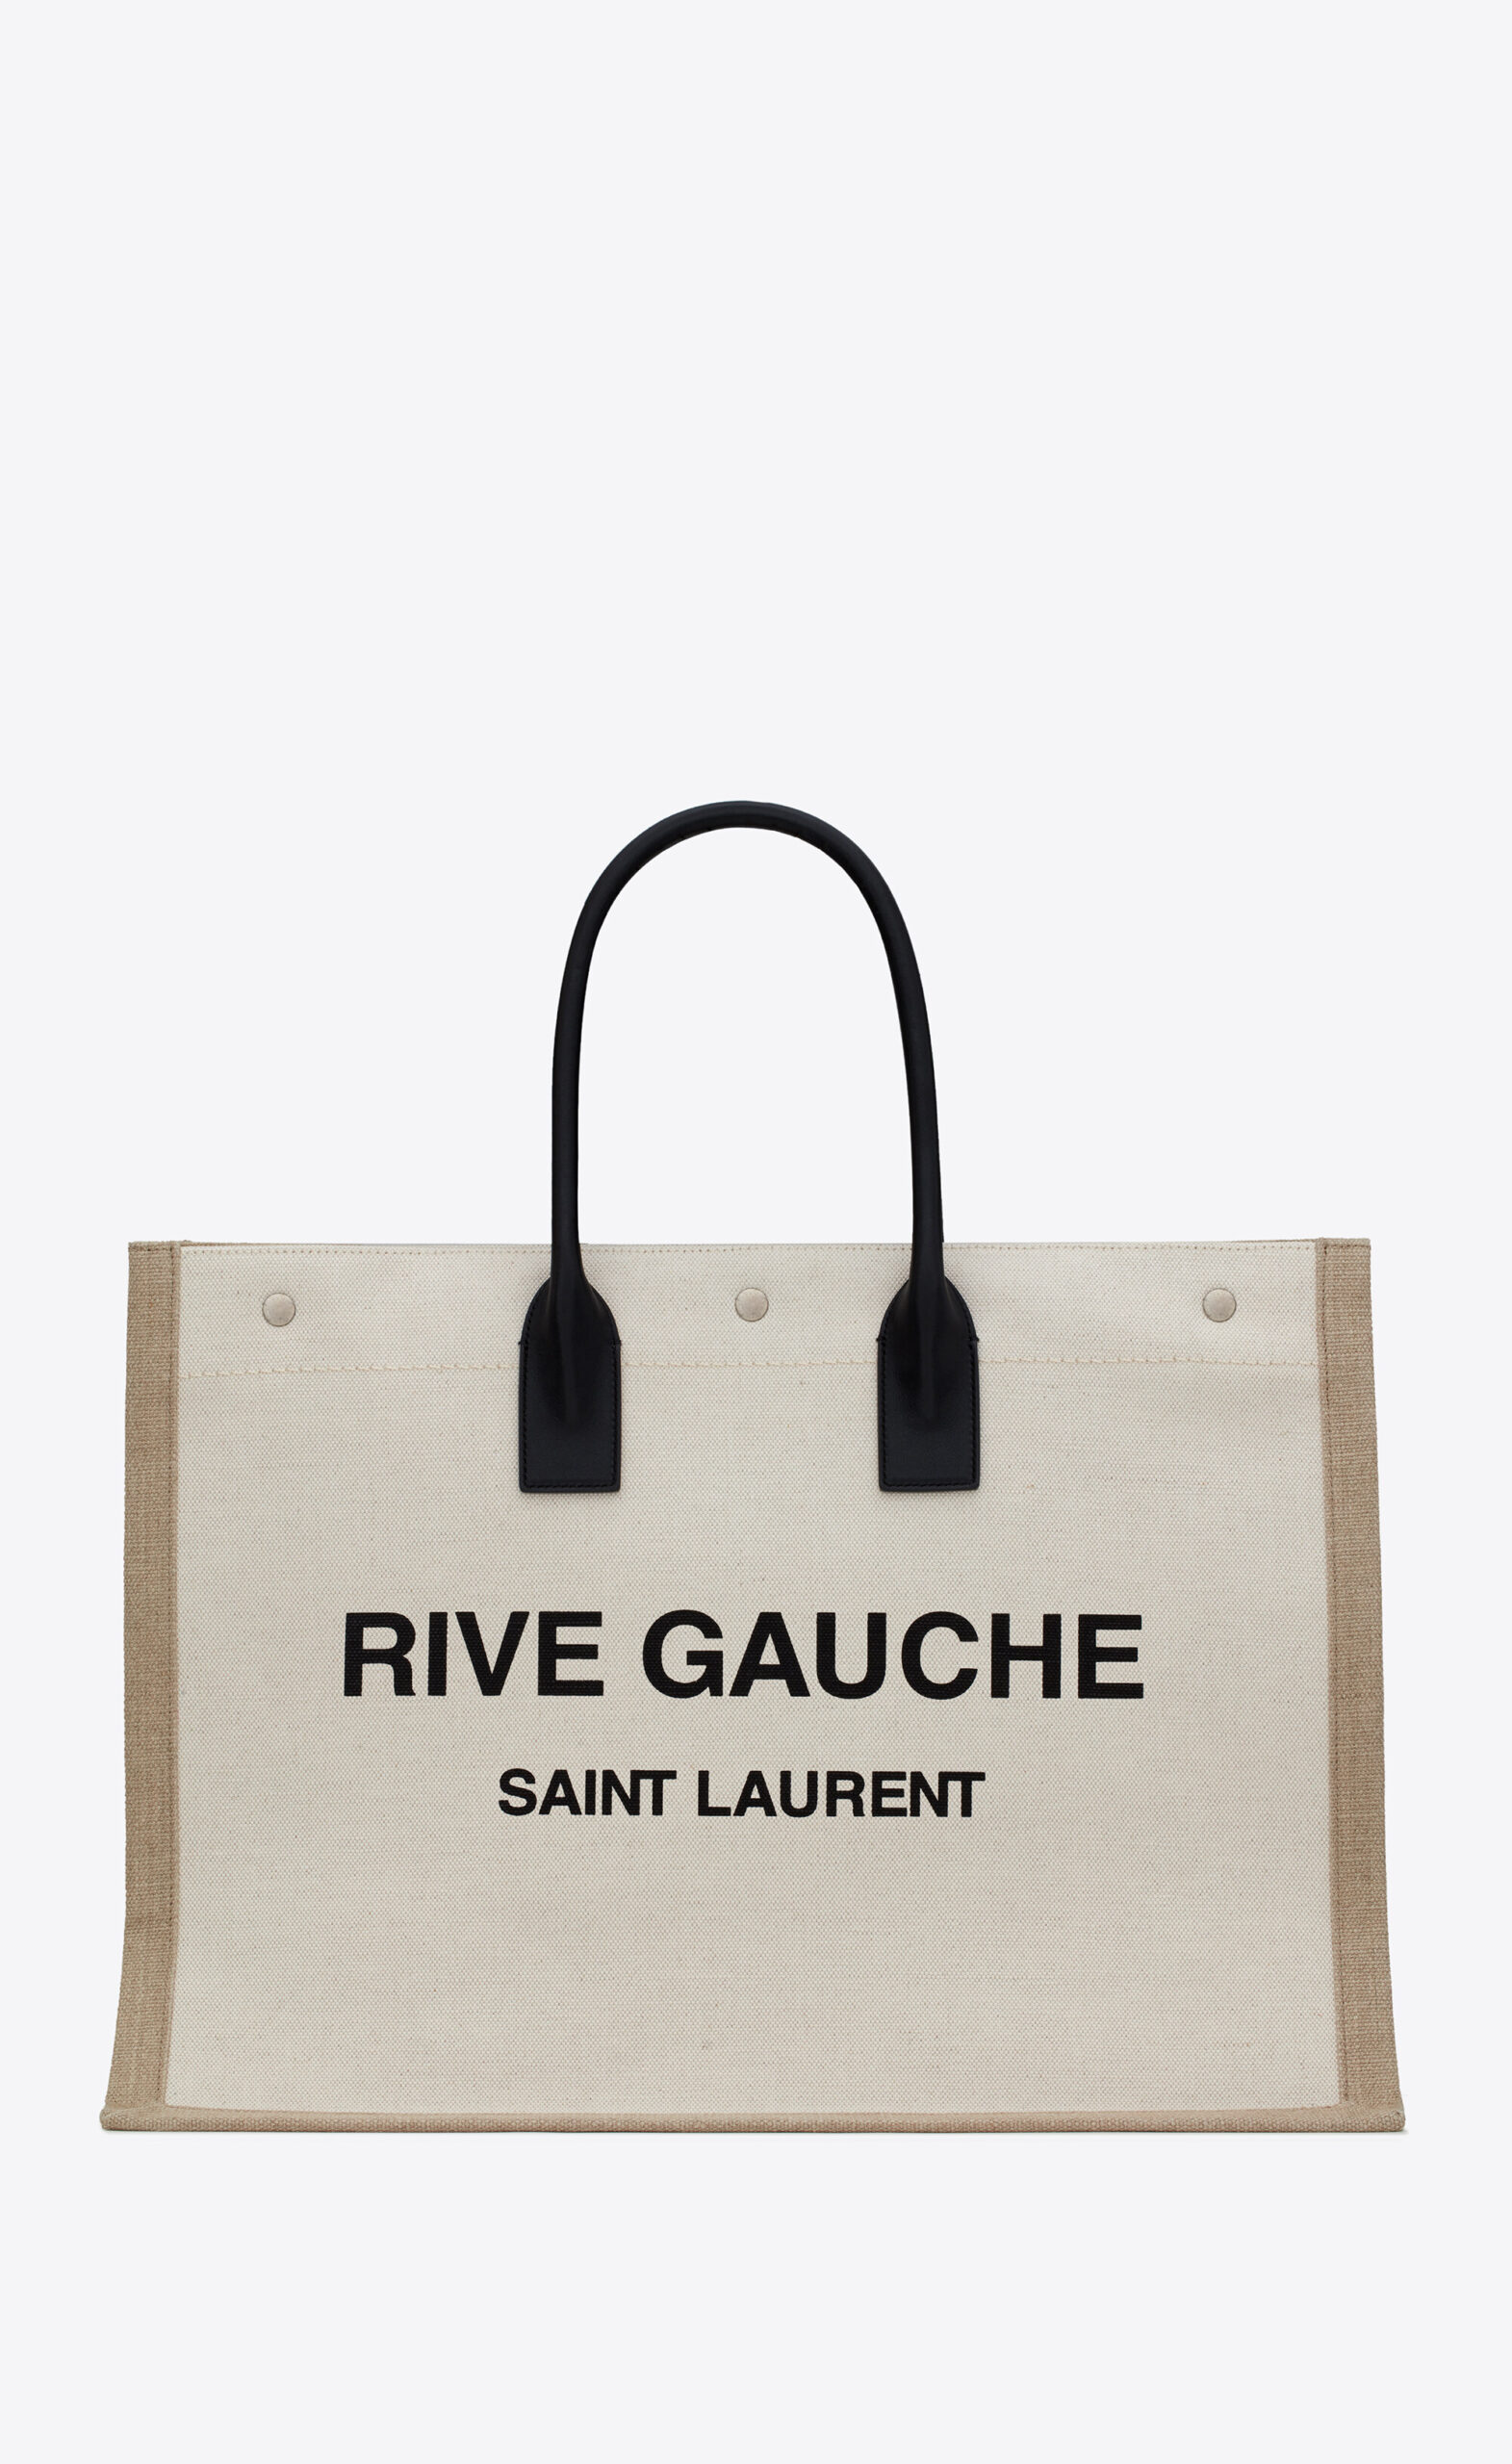 Our top 5 Saint Laurent bags – Vintega